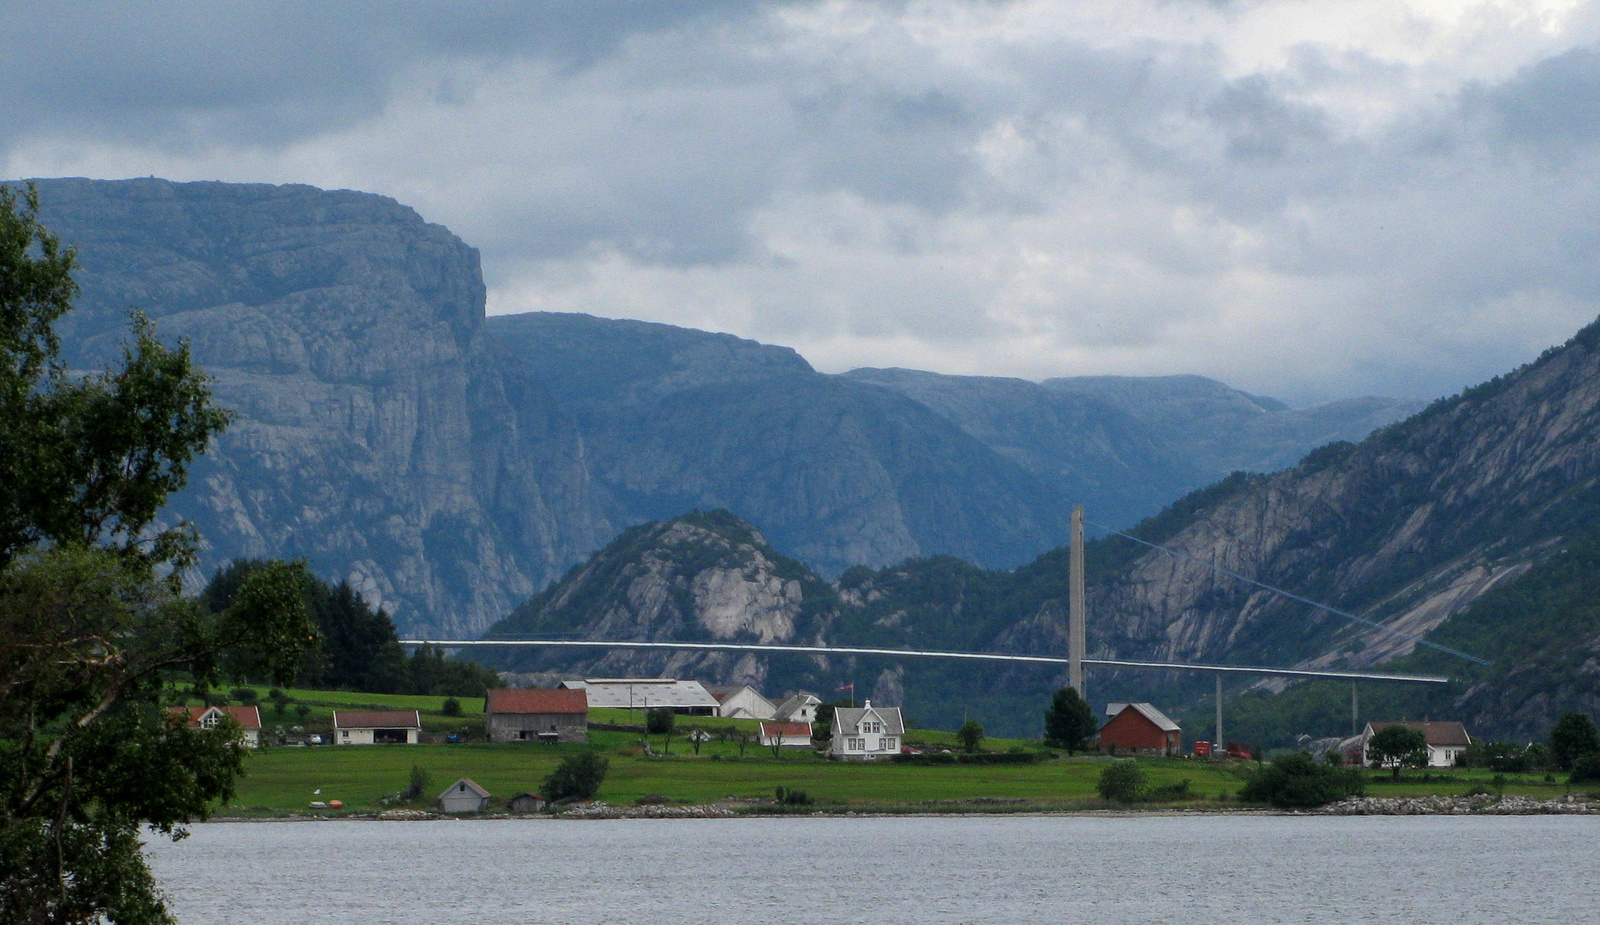 Lyse-fjord bejárata